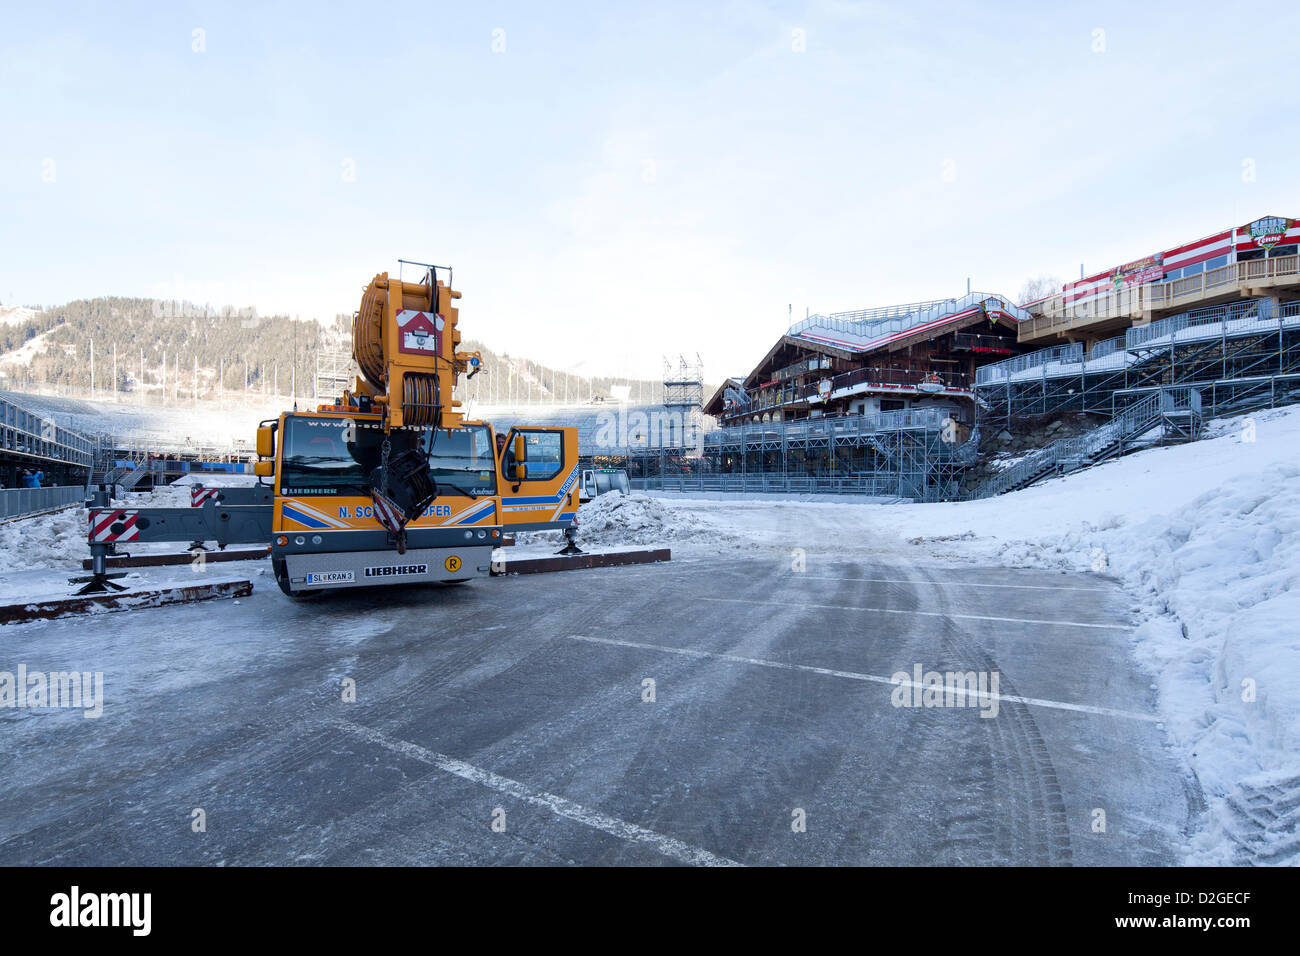 Vorbereitende Maßnahmen im Zielbereich für den FIS Alpinen Ski Weltmeisterschaften 2013 in Schladming, Steiermark, Österreich, Mittwoch, 23. Januar 2013. Stockfoto